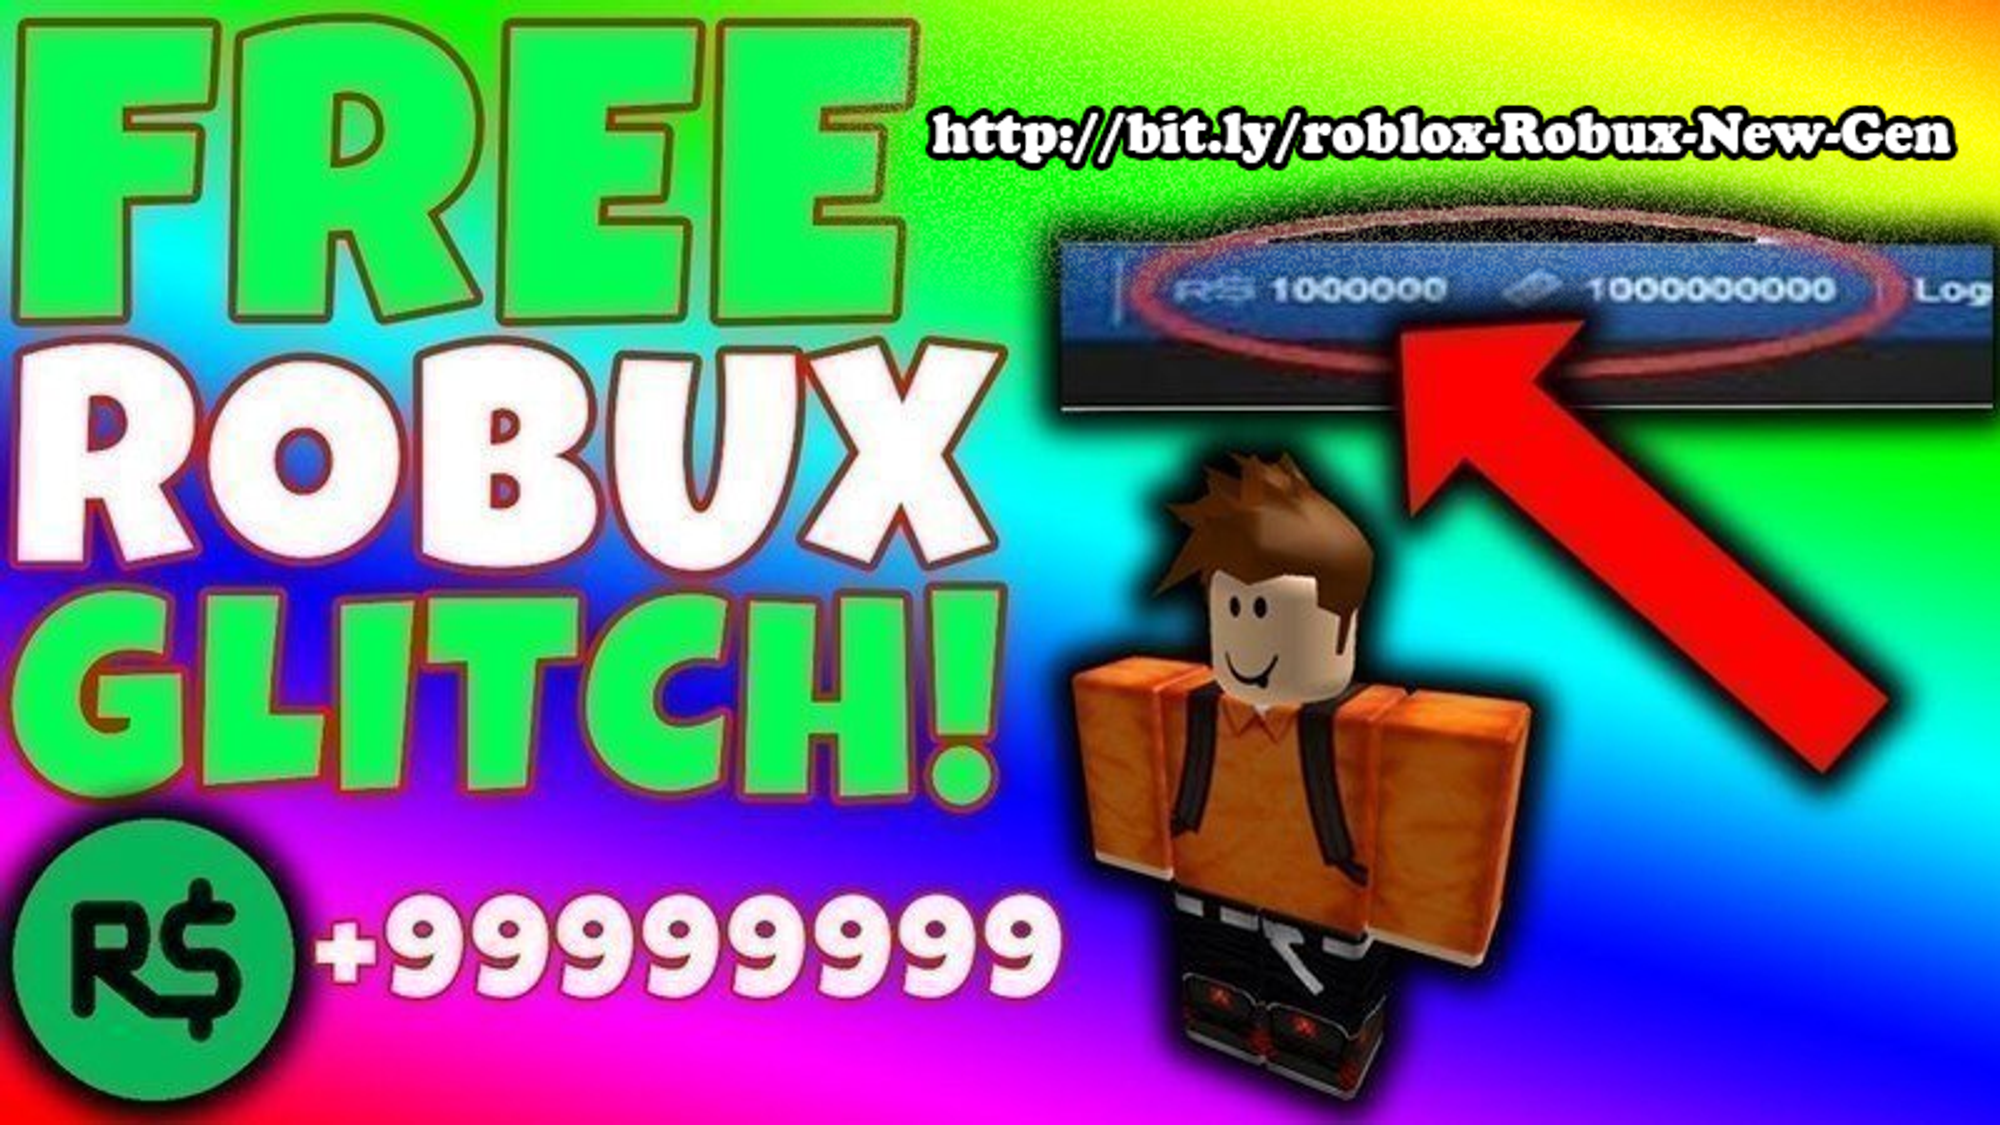 2020 Come Avere Robux Su Roblox Gratis Trucchi Per Roblox Ps4 Xbox One Android E Ios - come ricevere robux gratis